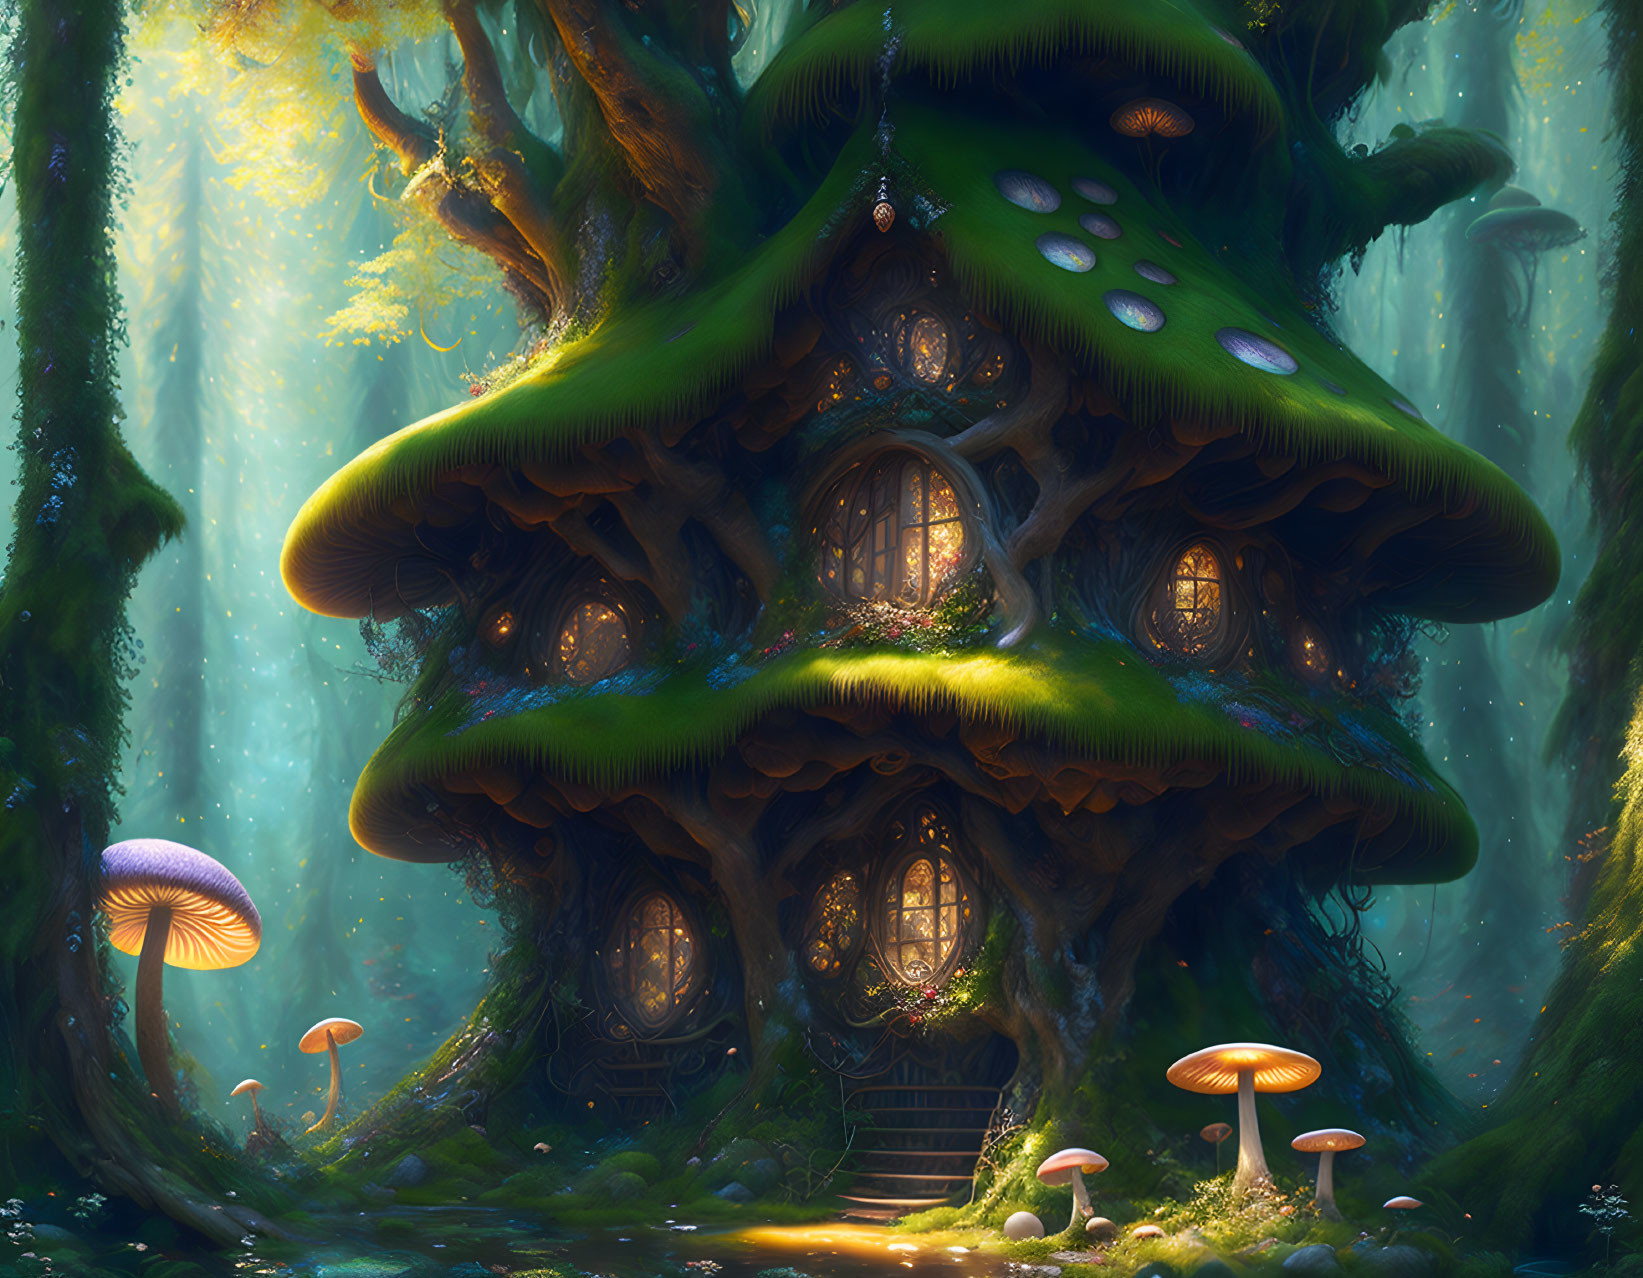 Mushroom house 